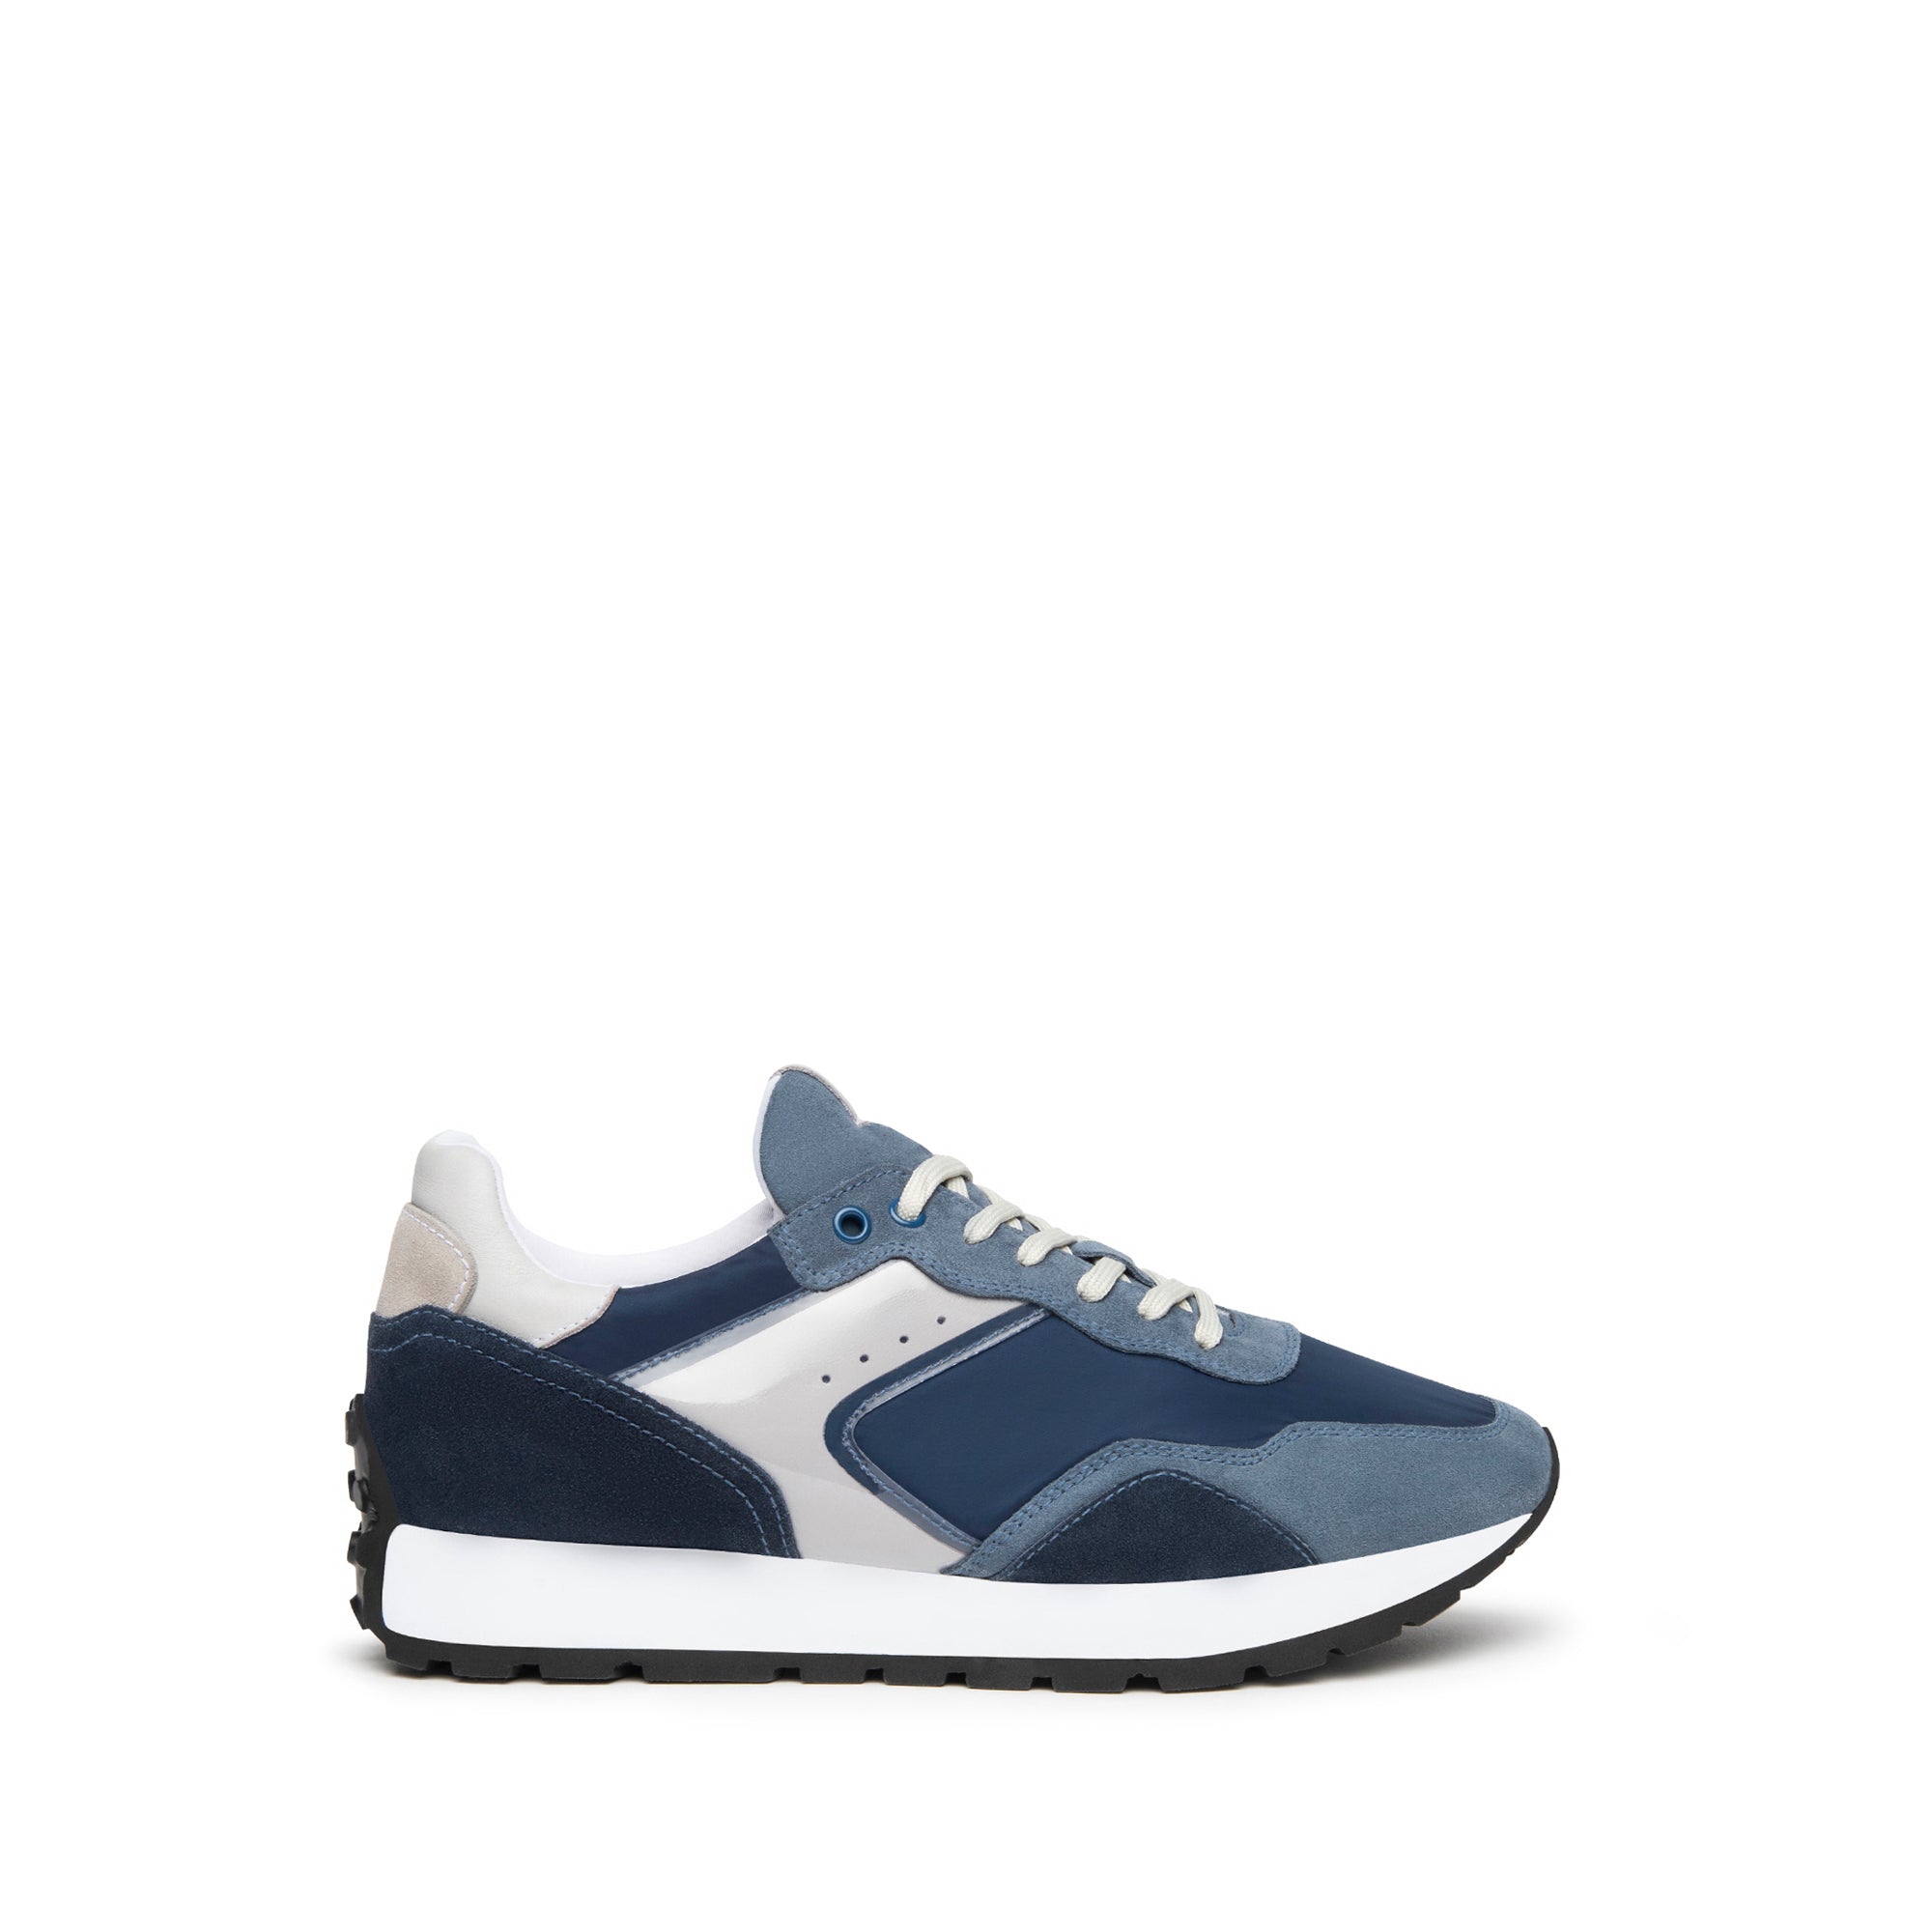 NERO GIARDINI Sneakers Uomo - Blu